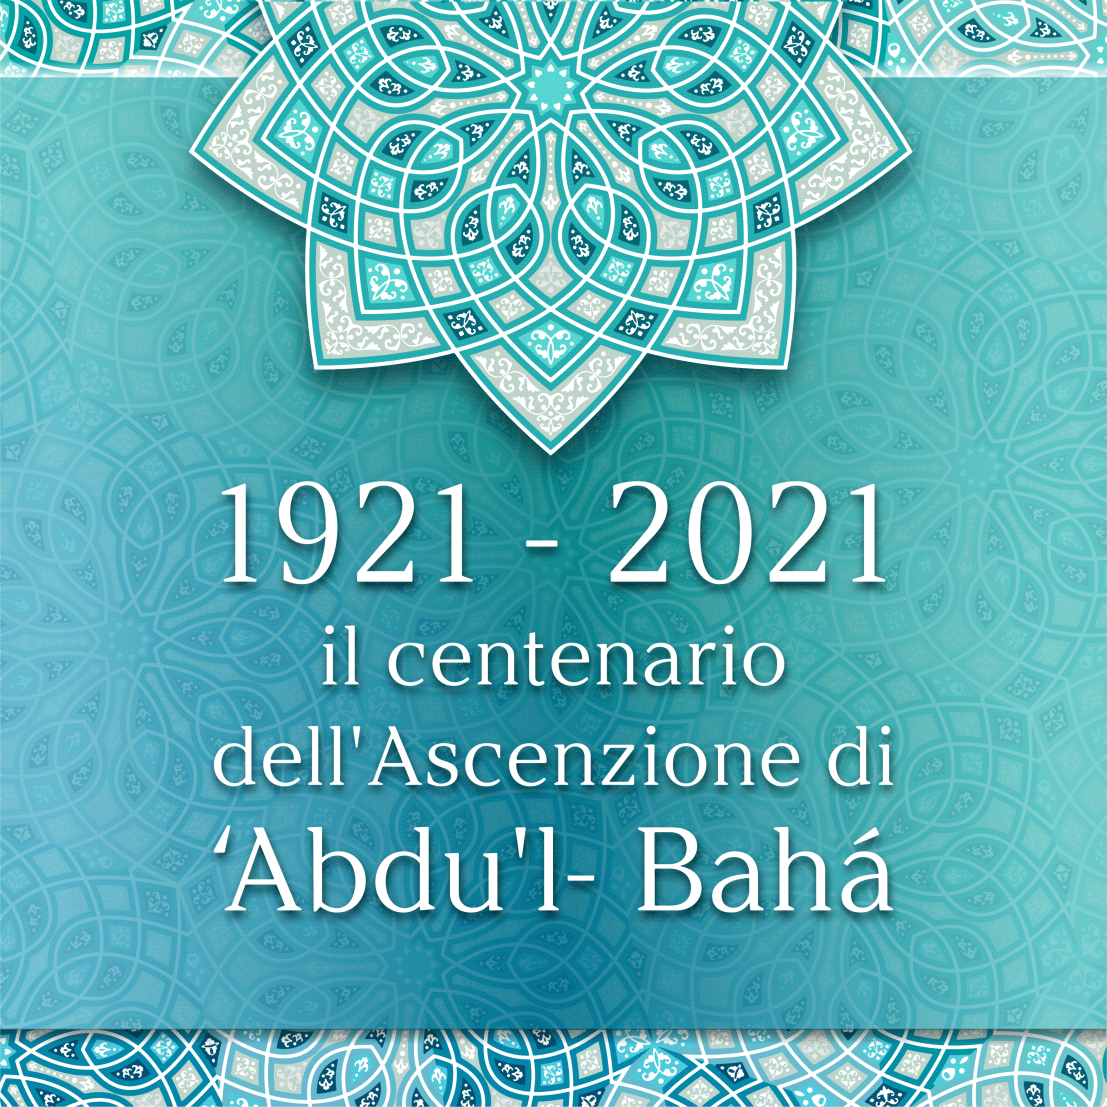 abdulbahath baha'i Bahai bahai art bahath graphics designer